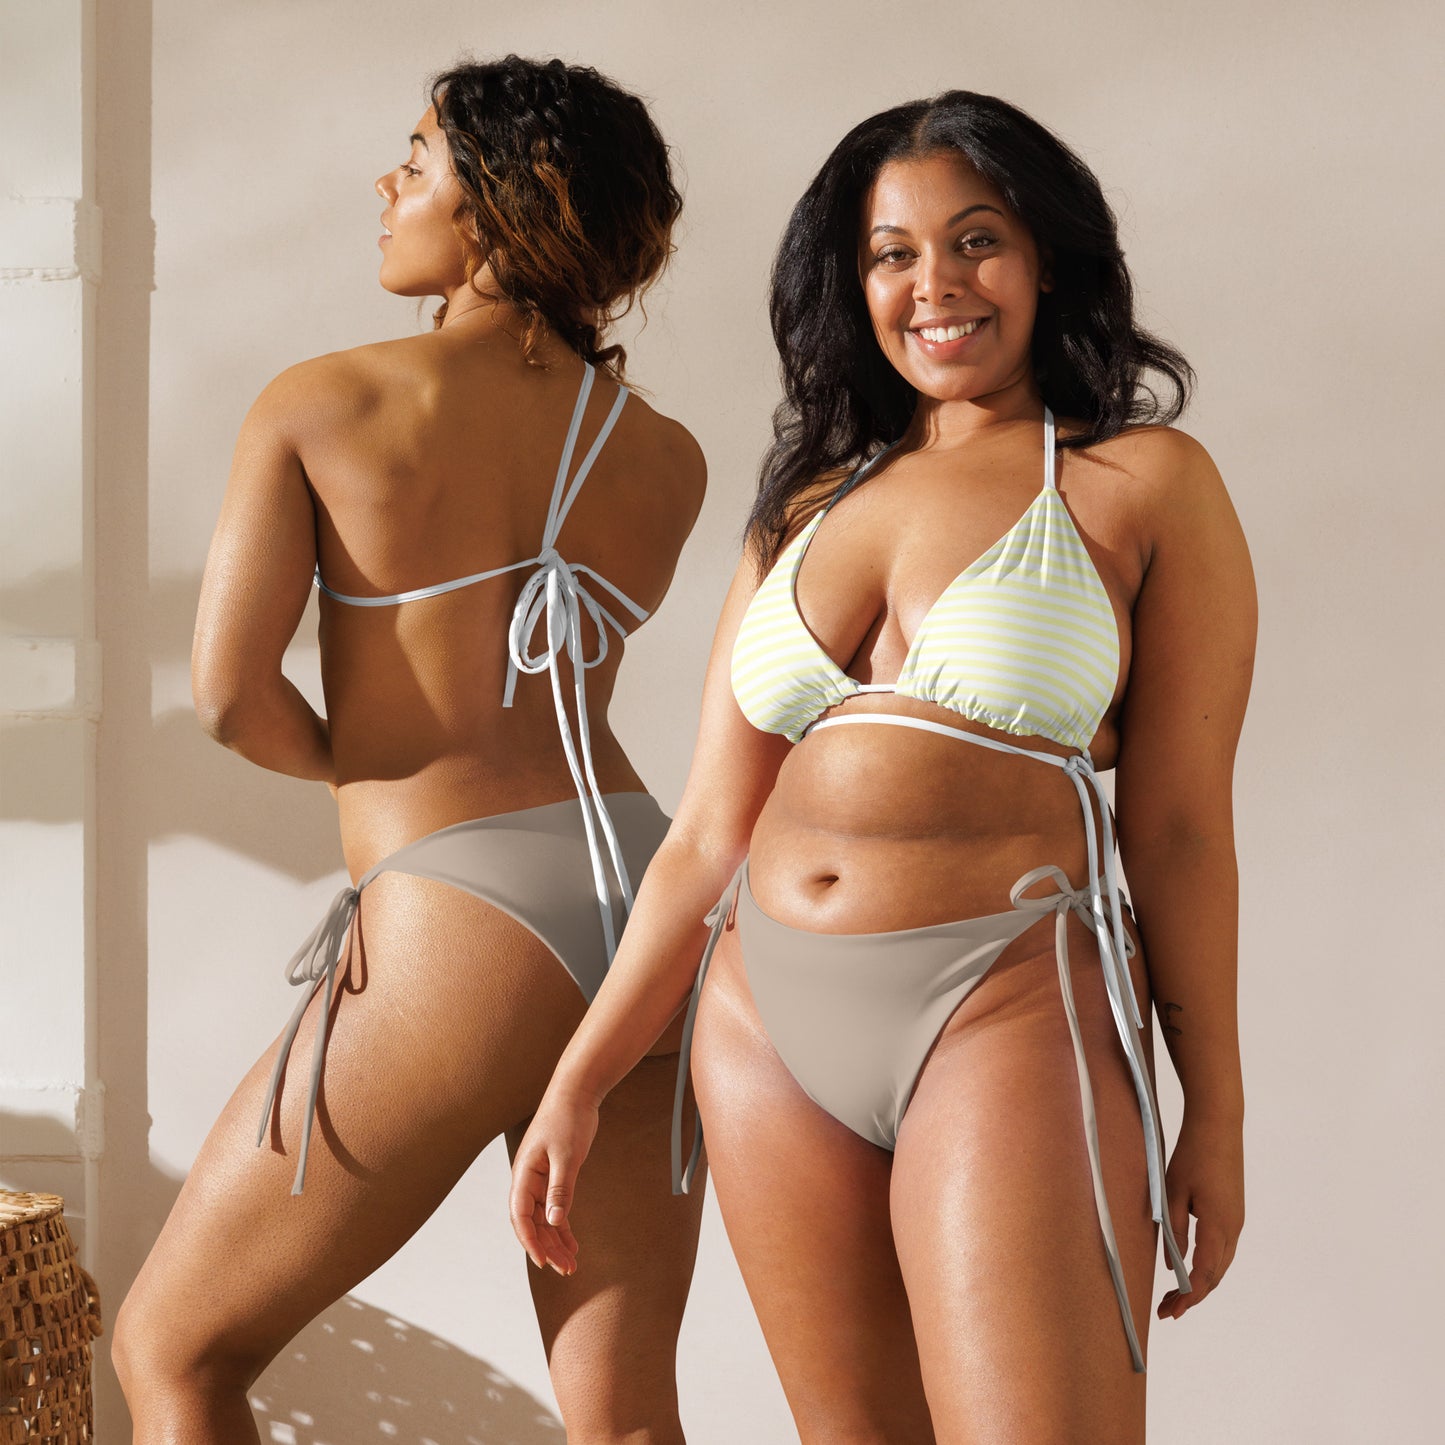 String Bikini Top | Pastel Lemon - Stripes by aisoi Swimwear & Beachwear